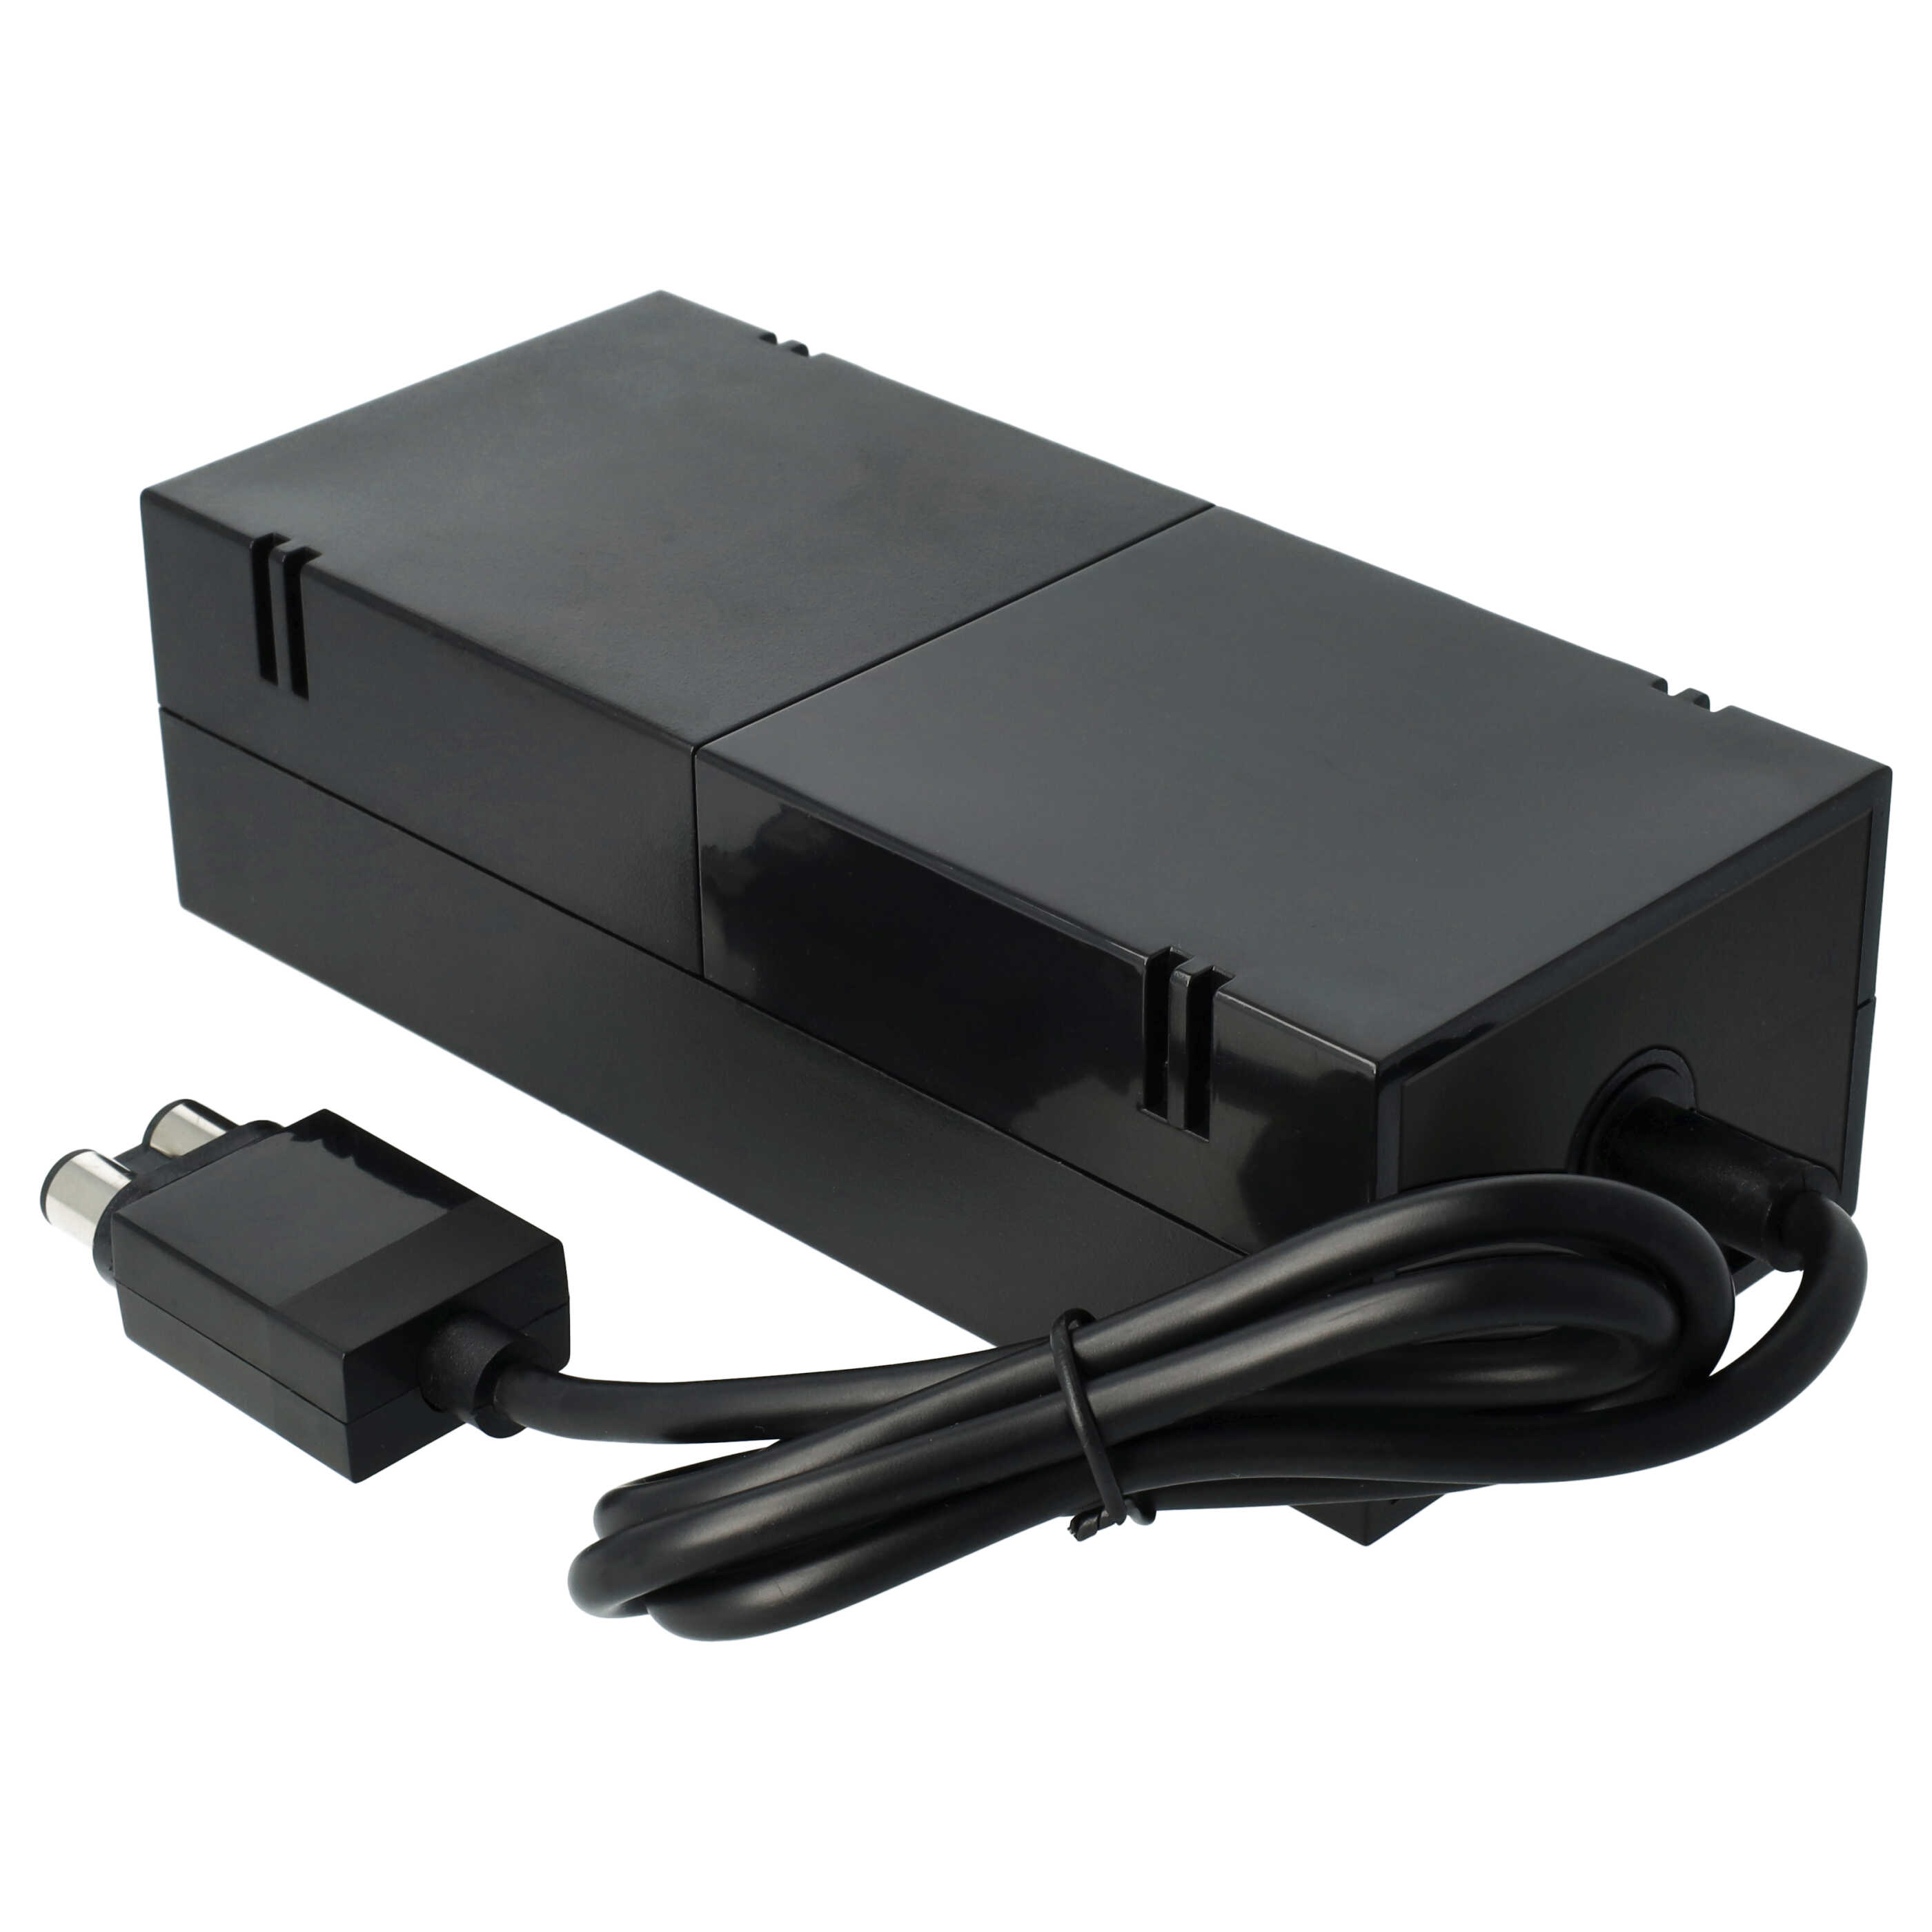 Bloc d'alimentation remplace Microsoft PE-2121-03M1 pour console de jeux vidéo Xbox One Microsoft - 190 cm